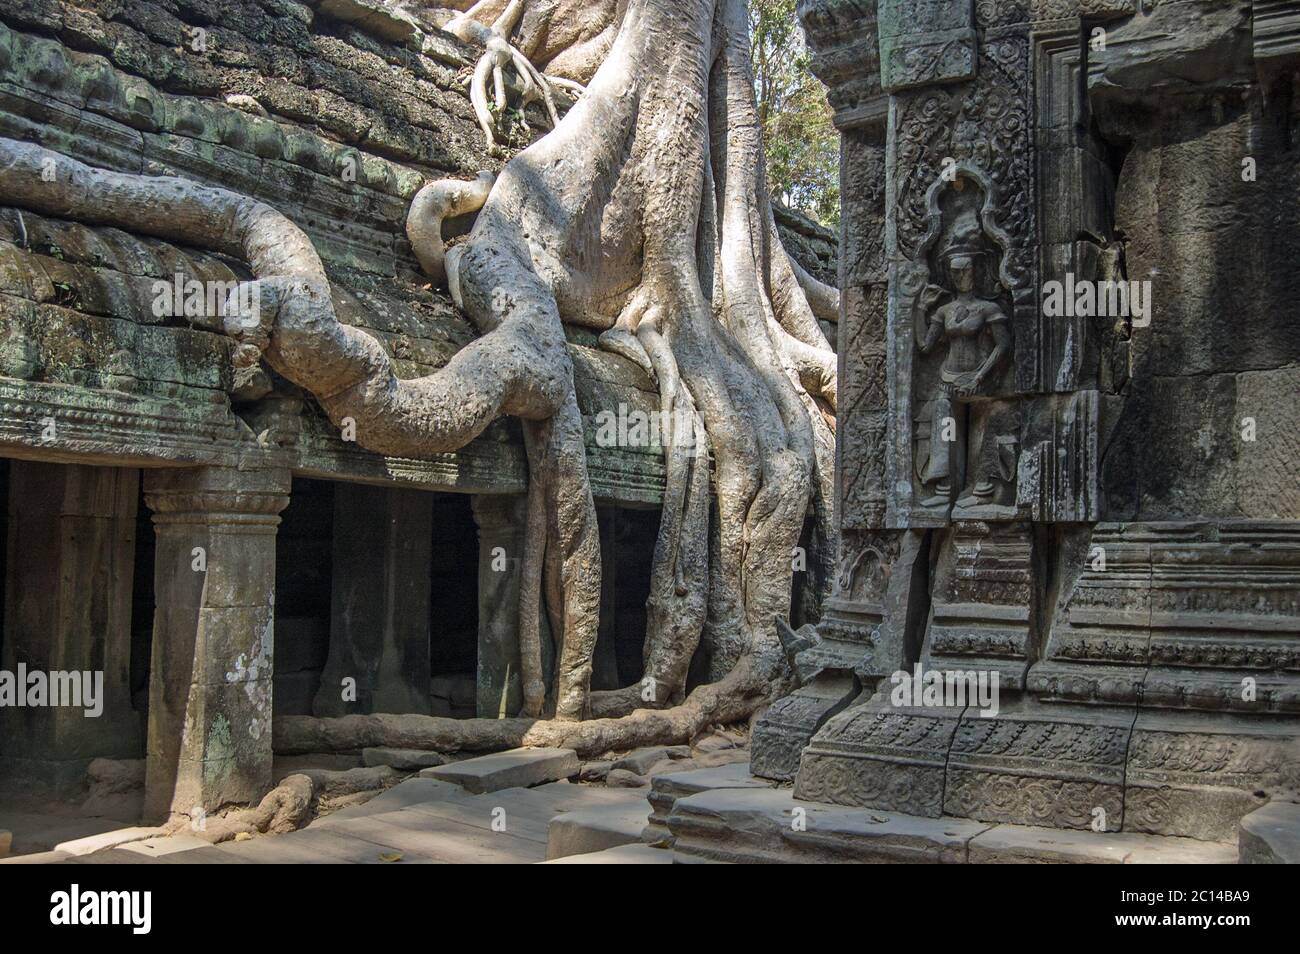 TA Prohm tempio in Angkor, Cambogia. Antiche rovine con un albero di kapok, Ceiba pentandra, che cresce su di esso. Foto Stock